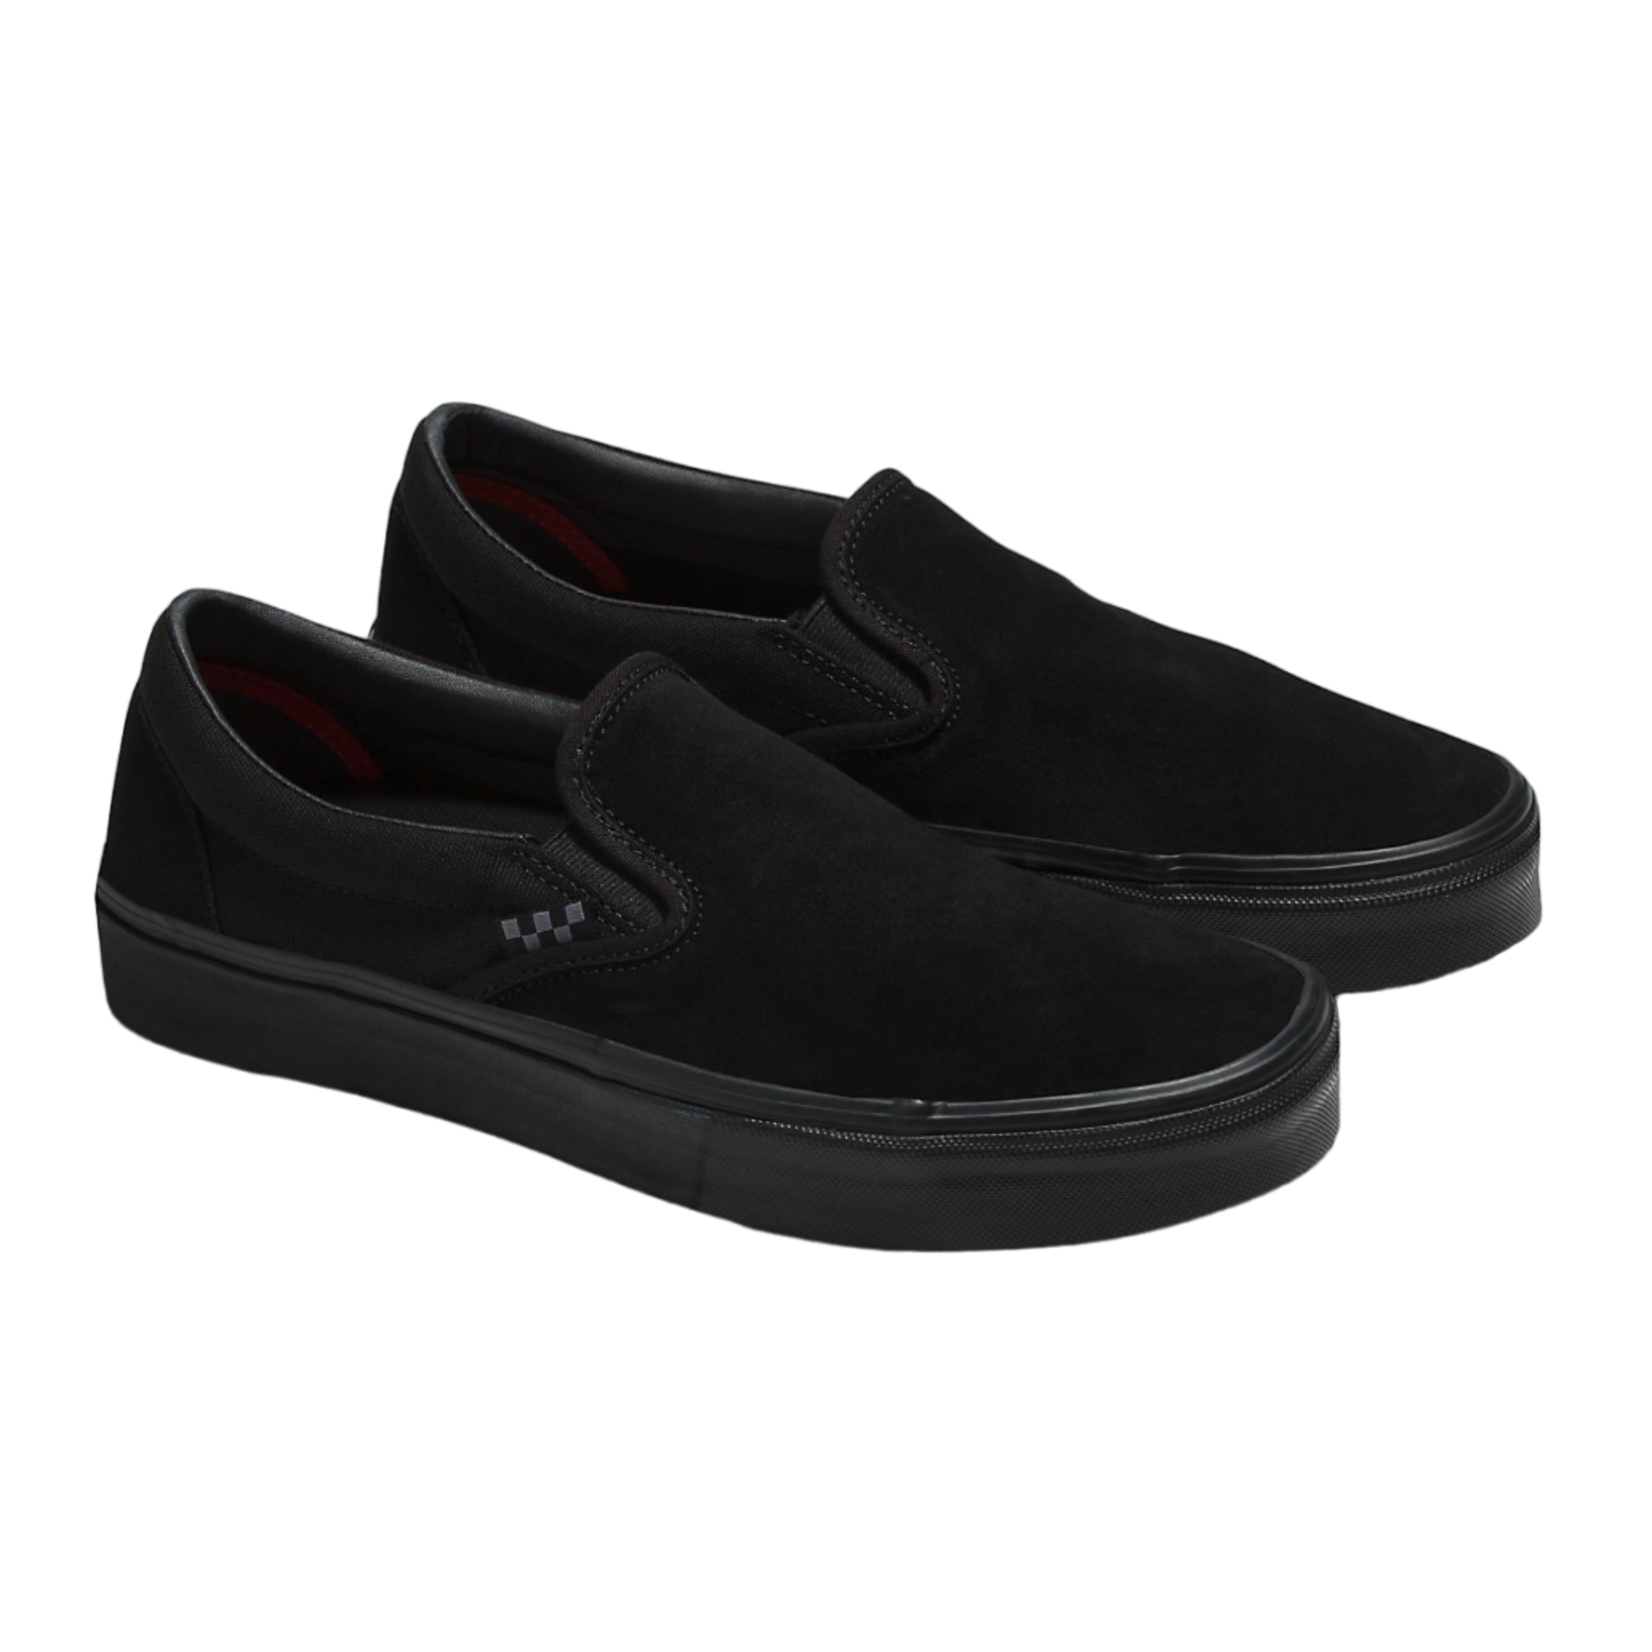 Vans On Skate Shoes - Black/Black - - Attic Skate Shop